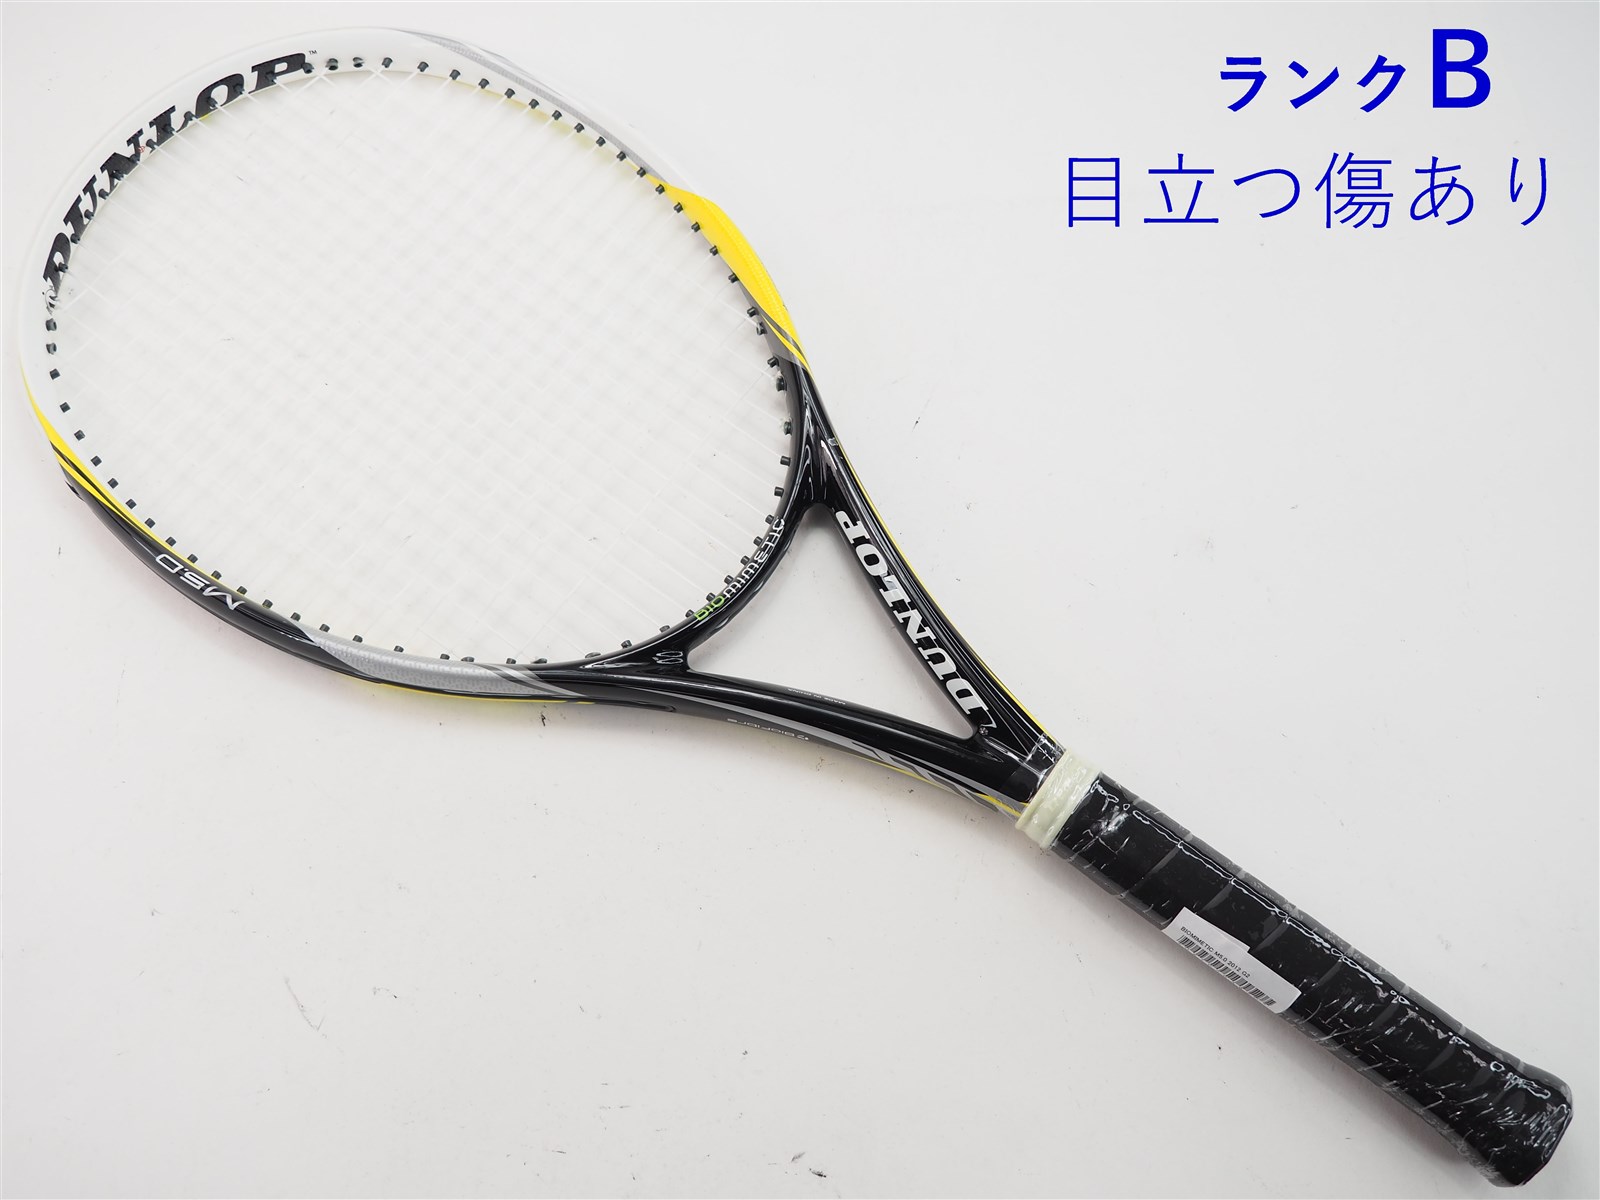 テニスラケット ダンロップ バイオミメティック M5.0 2012年モデル (G2)DUNLOP BIOMIMETIC M5.0 201225-25-22mm重量